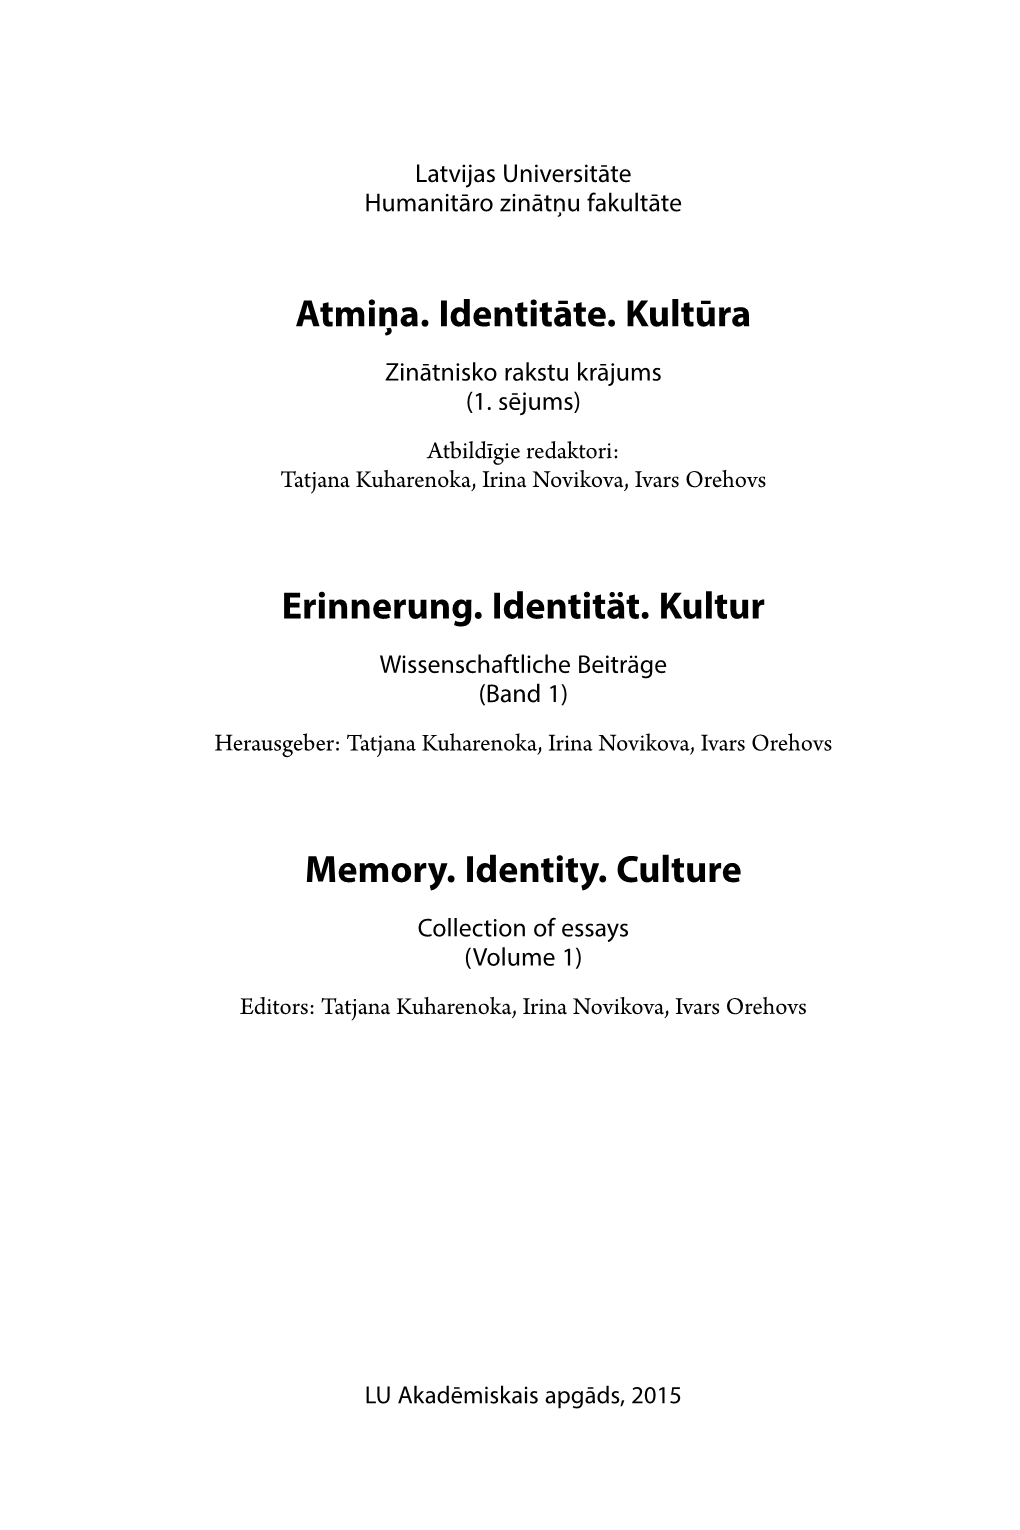 Atmiņa. Identitāte. Kultūra Zinātnisko Rakstu Krājums (1